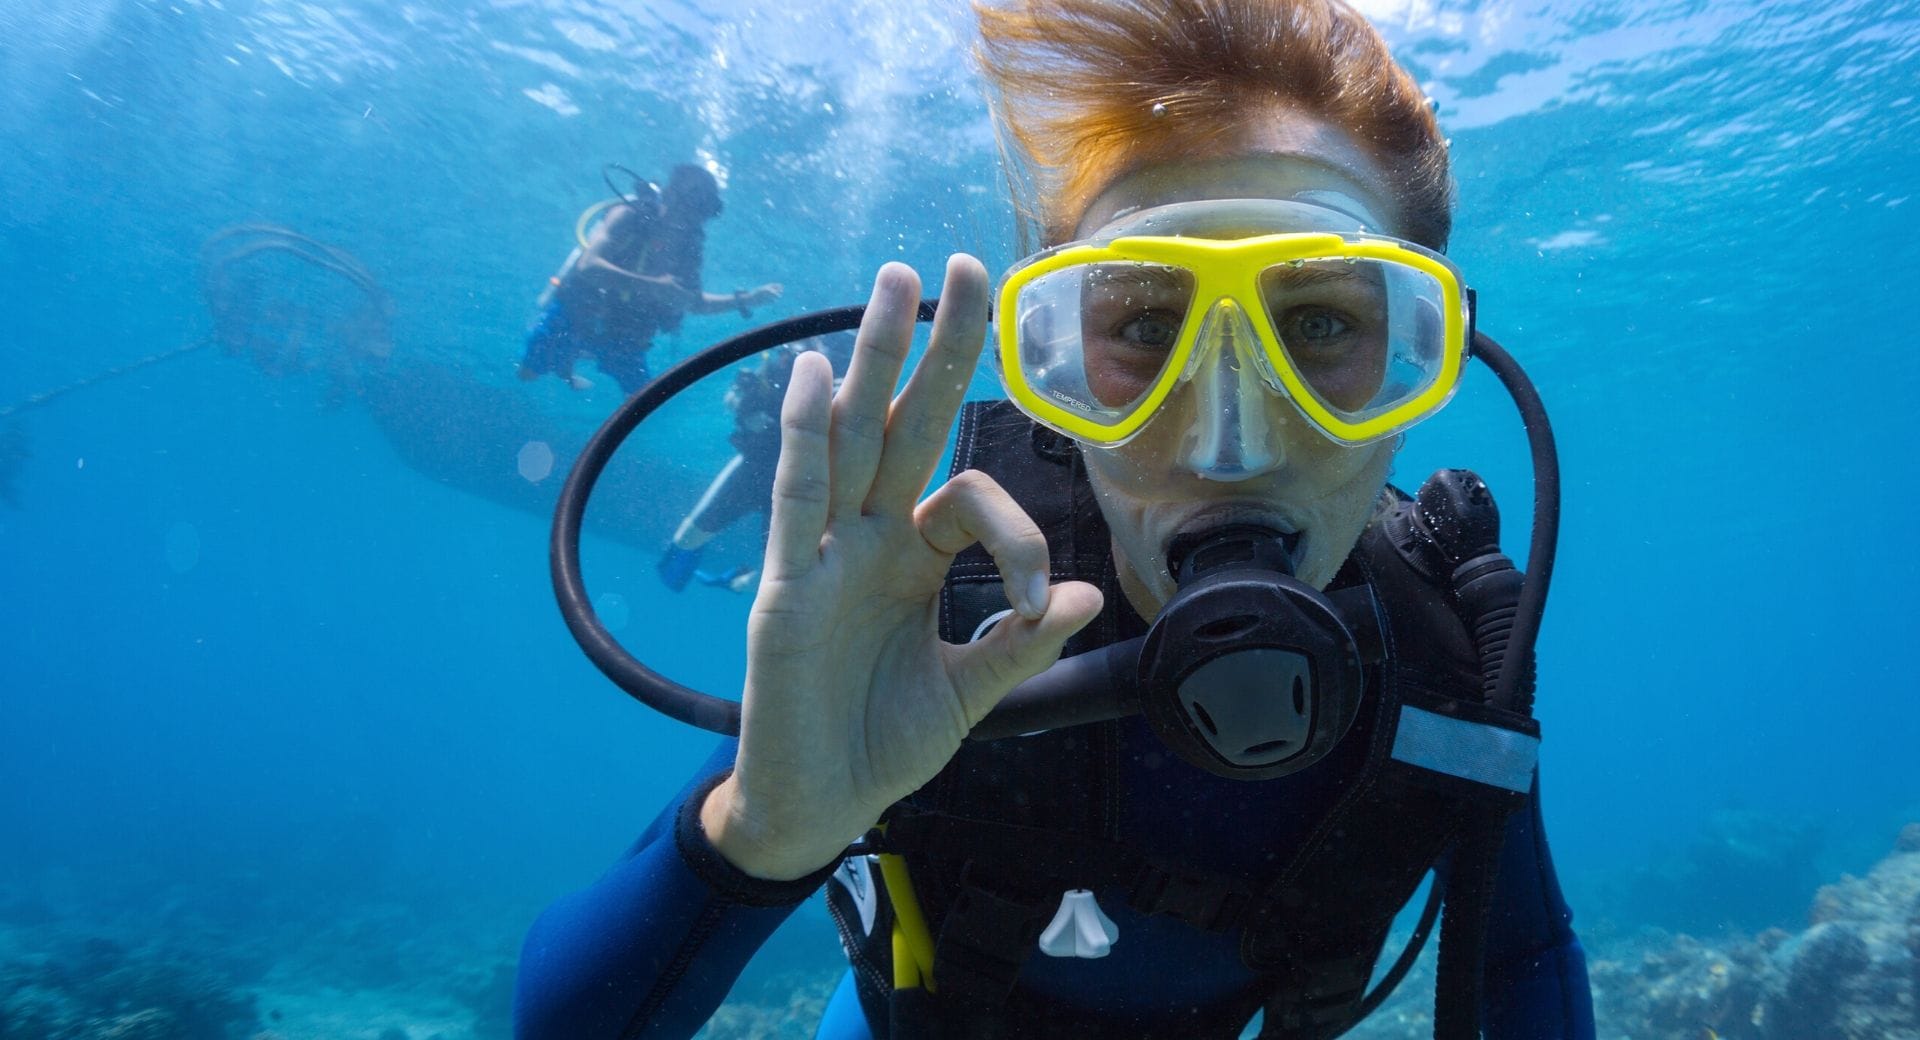 Comment rester calme lors d'une plongée sous-marine?